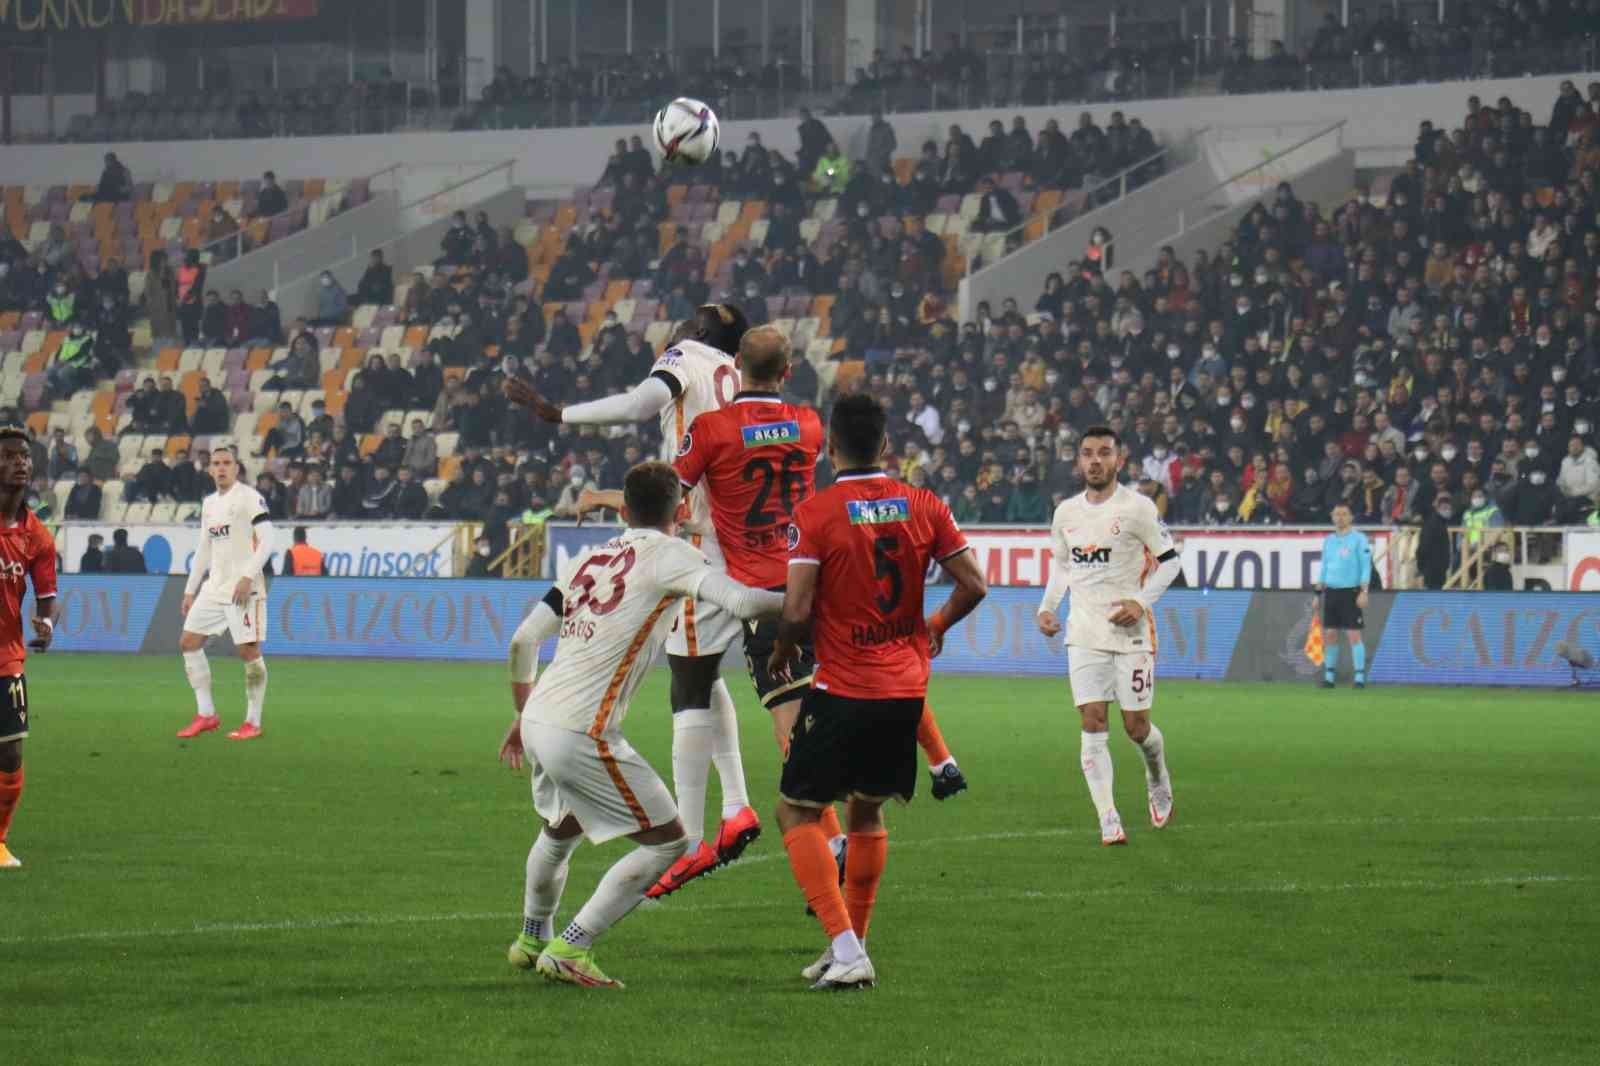 Spor Toto Süper Lig: Yeni Malatyaspor: 0 - Galatasaray: 0 (İlk yarı) #malatya